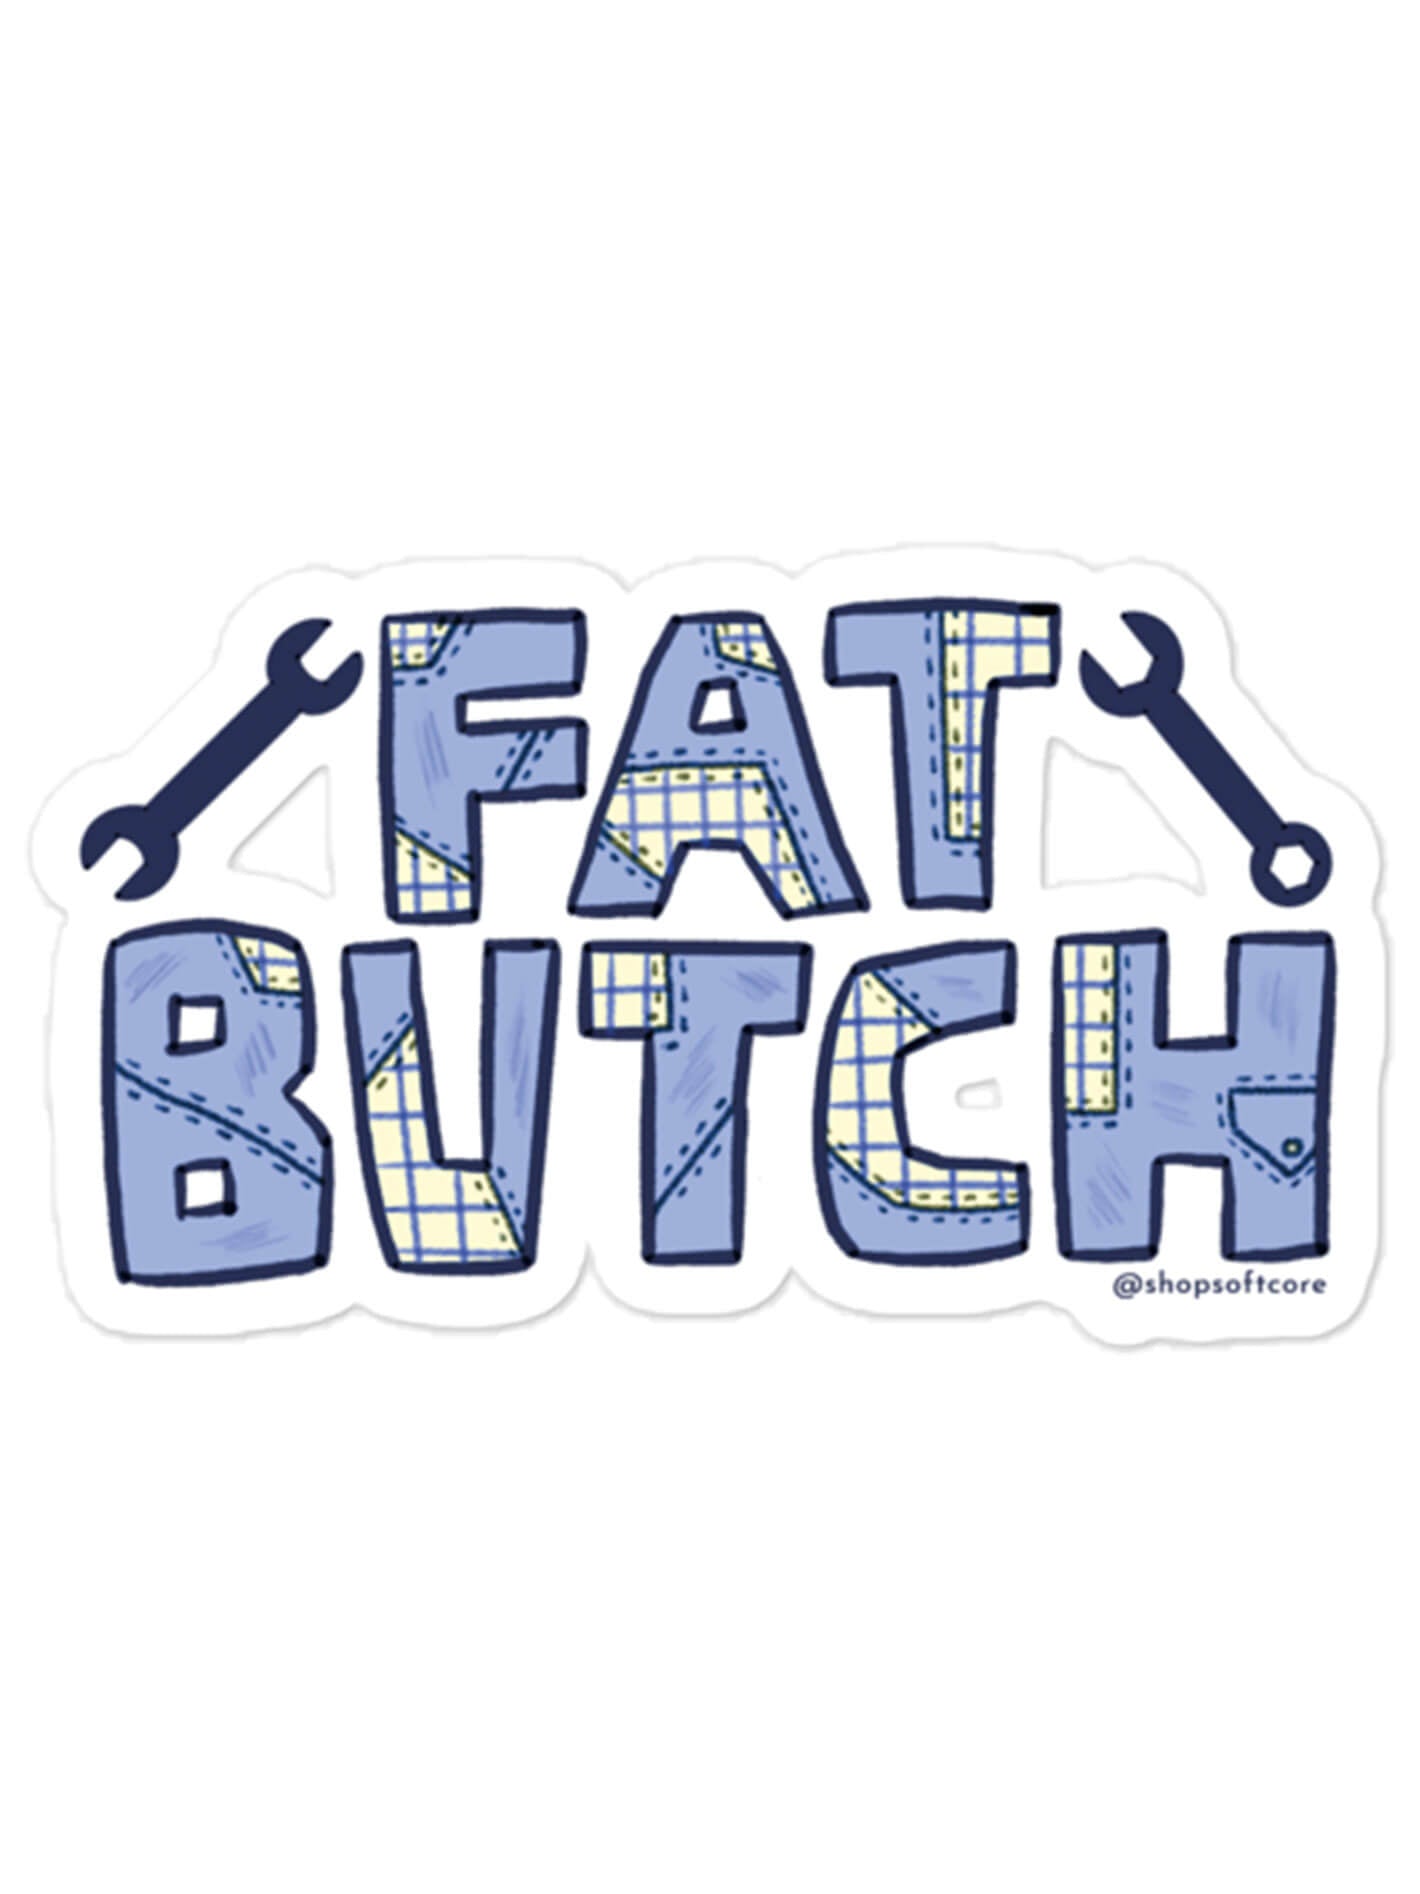 Fat butch sticker.